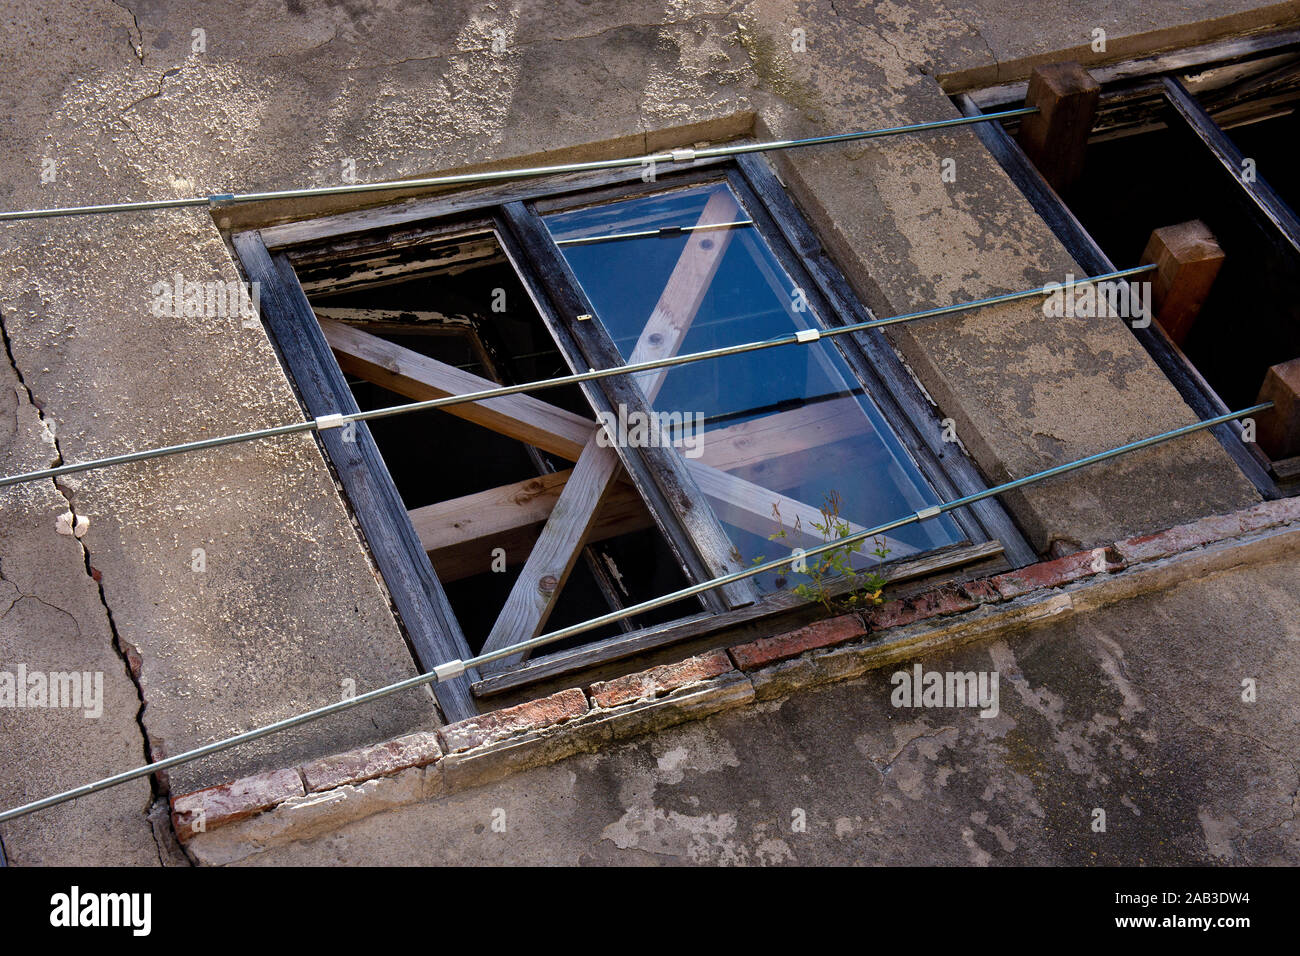 Stützsterben an einem einsturzgefährdeten Gebäude |Supporting dying in a dilapidated building| Stock Photo